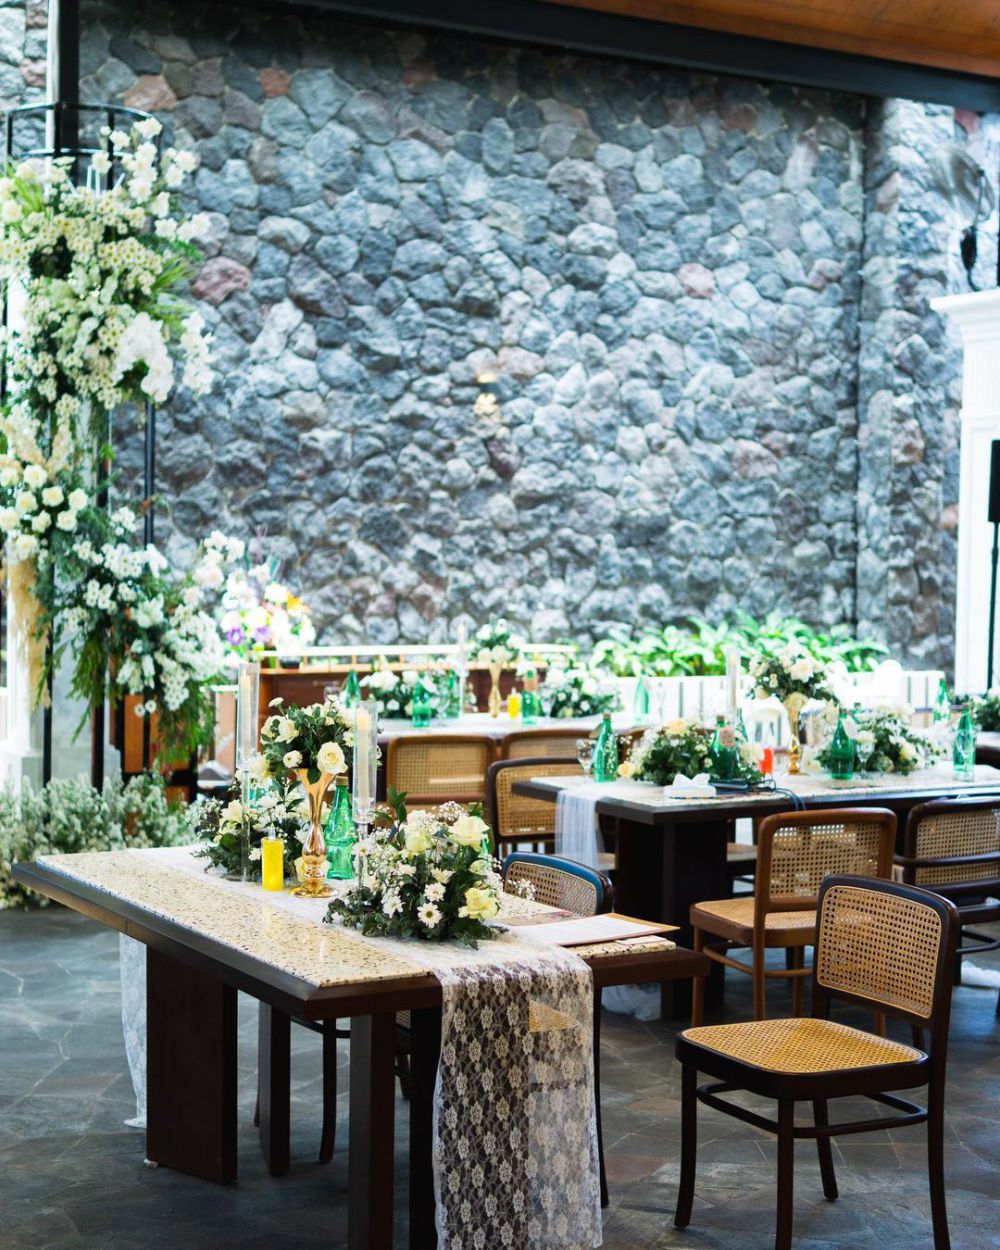 5 Tempat Makan Romantis di Blitar, Cocok untuk Kencan Bareng Doi